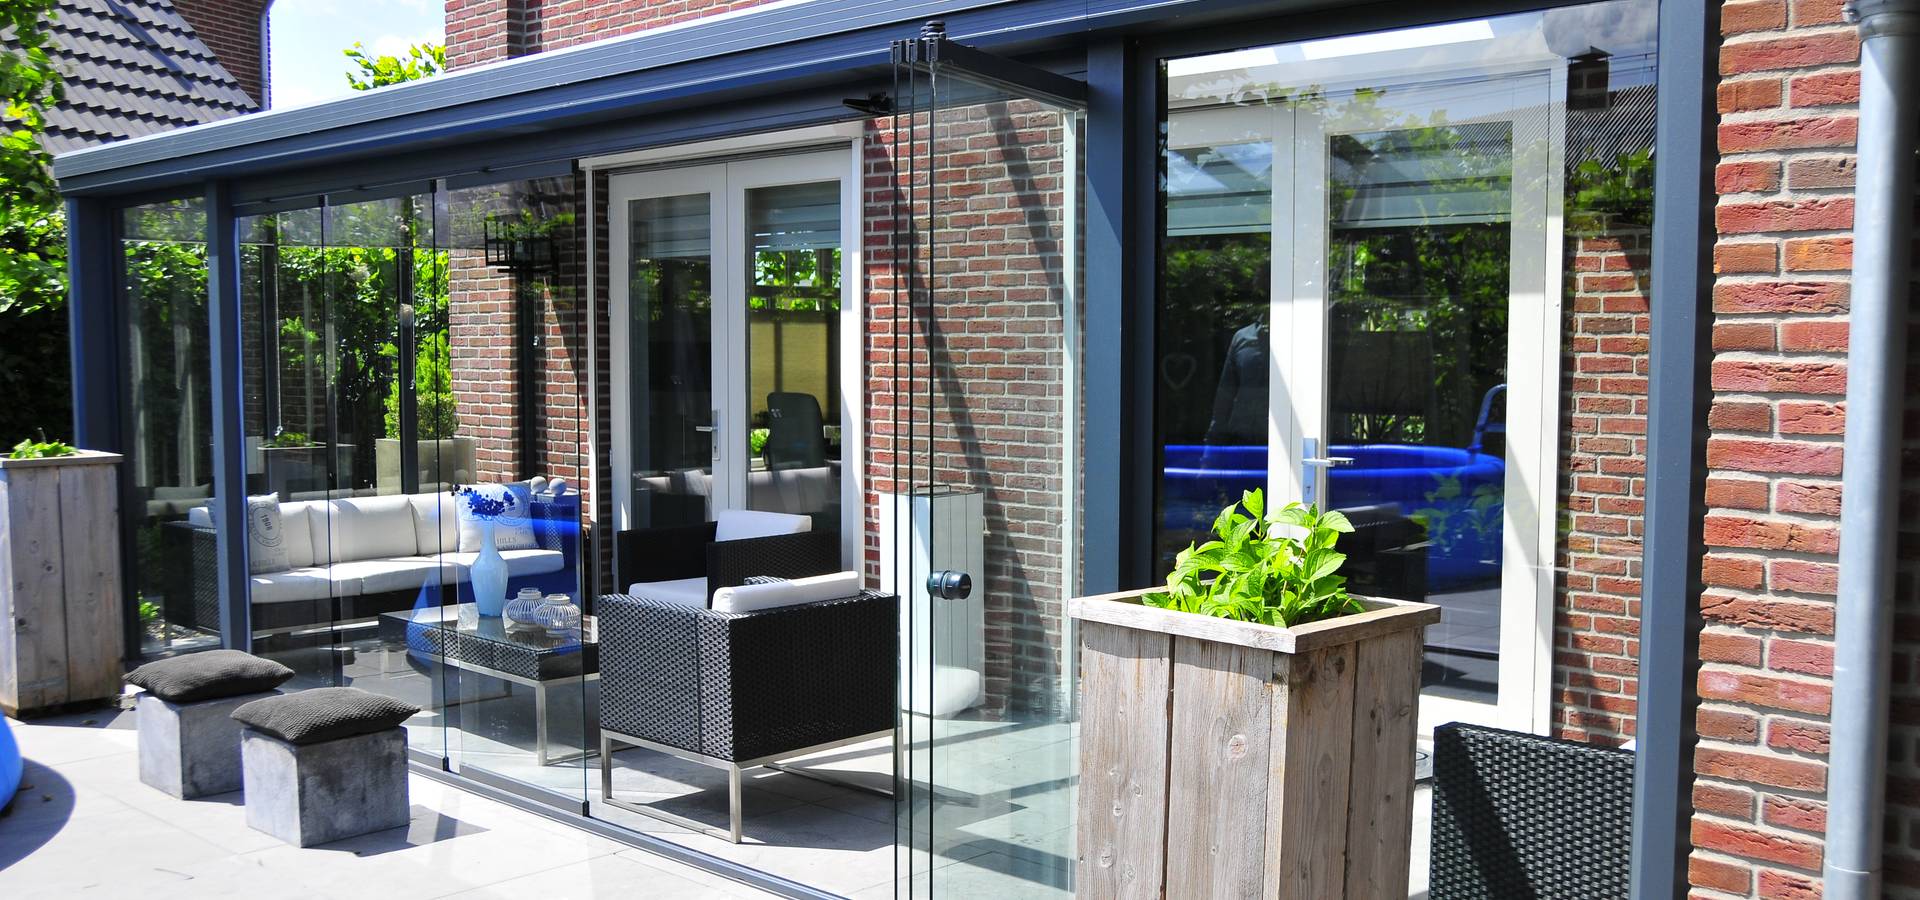 Cyclopen Stevig Voorschrijven Pallazzo Veranda: Terrassen, patio's & overkappingen in Eindhoven | homify